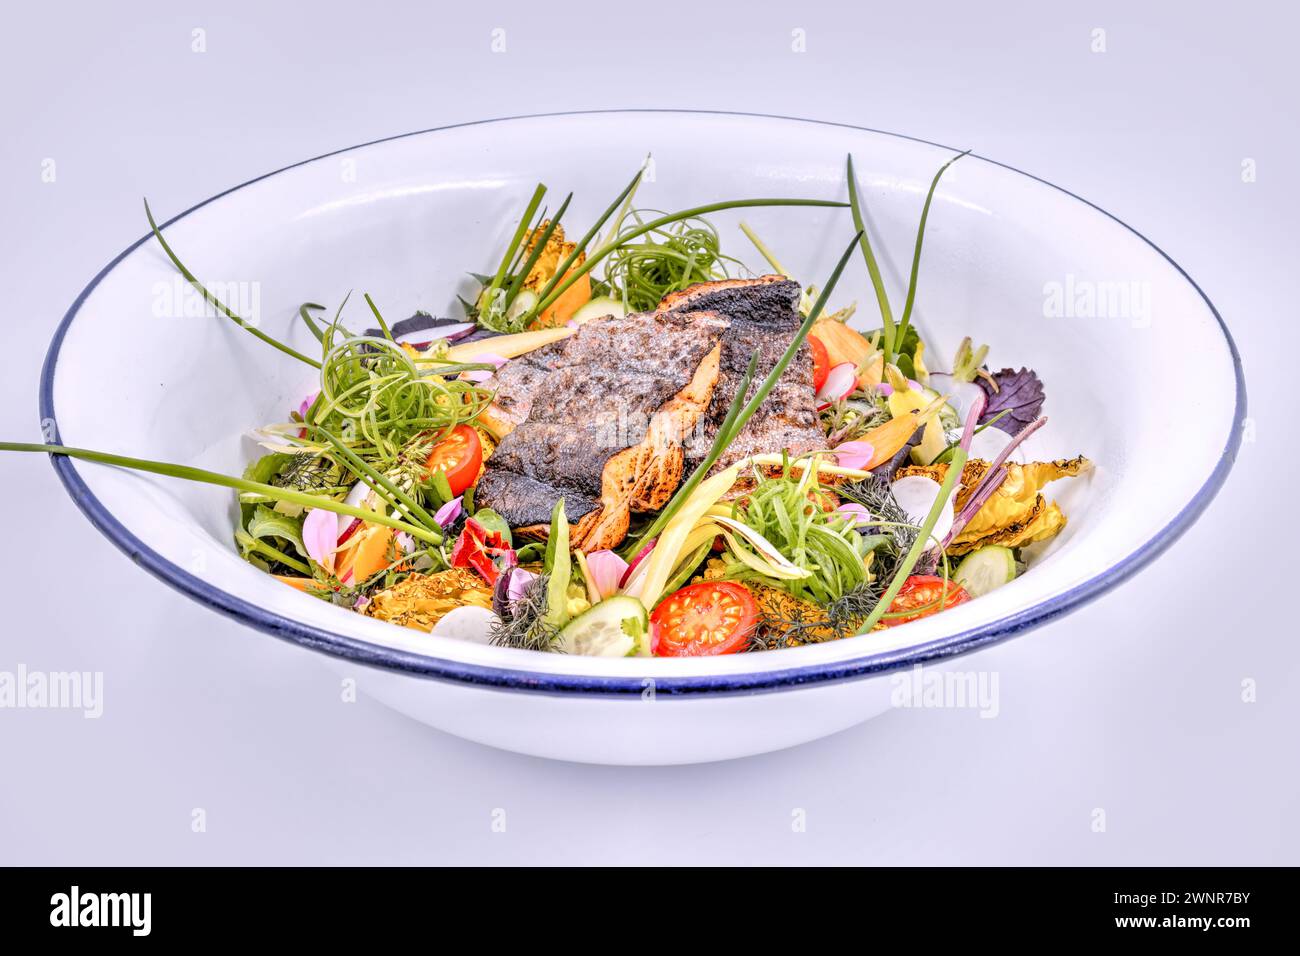 Ensalada fresca de jardín con filetes de pescado a la parrilla en la parte superior en un tazón blanco Foto de stock